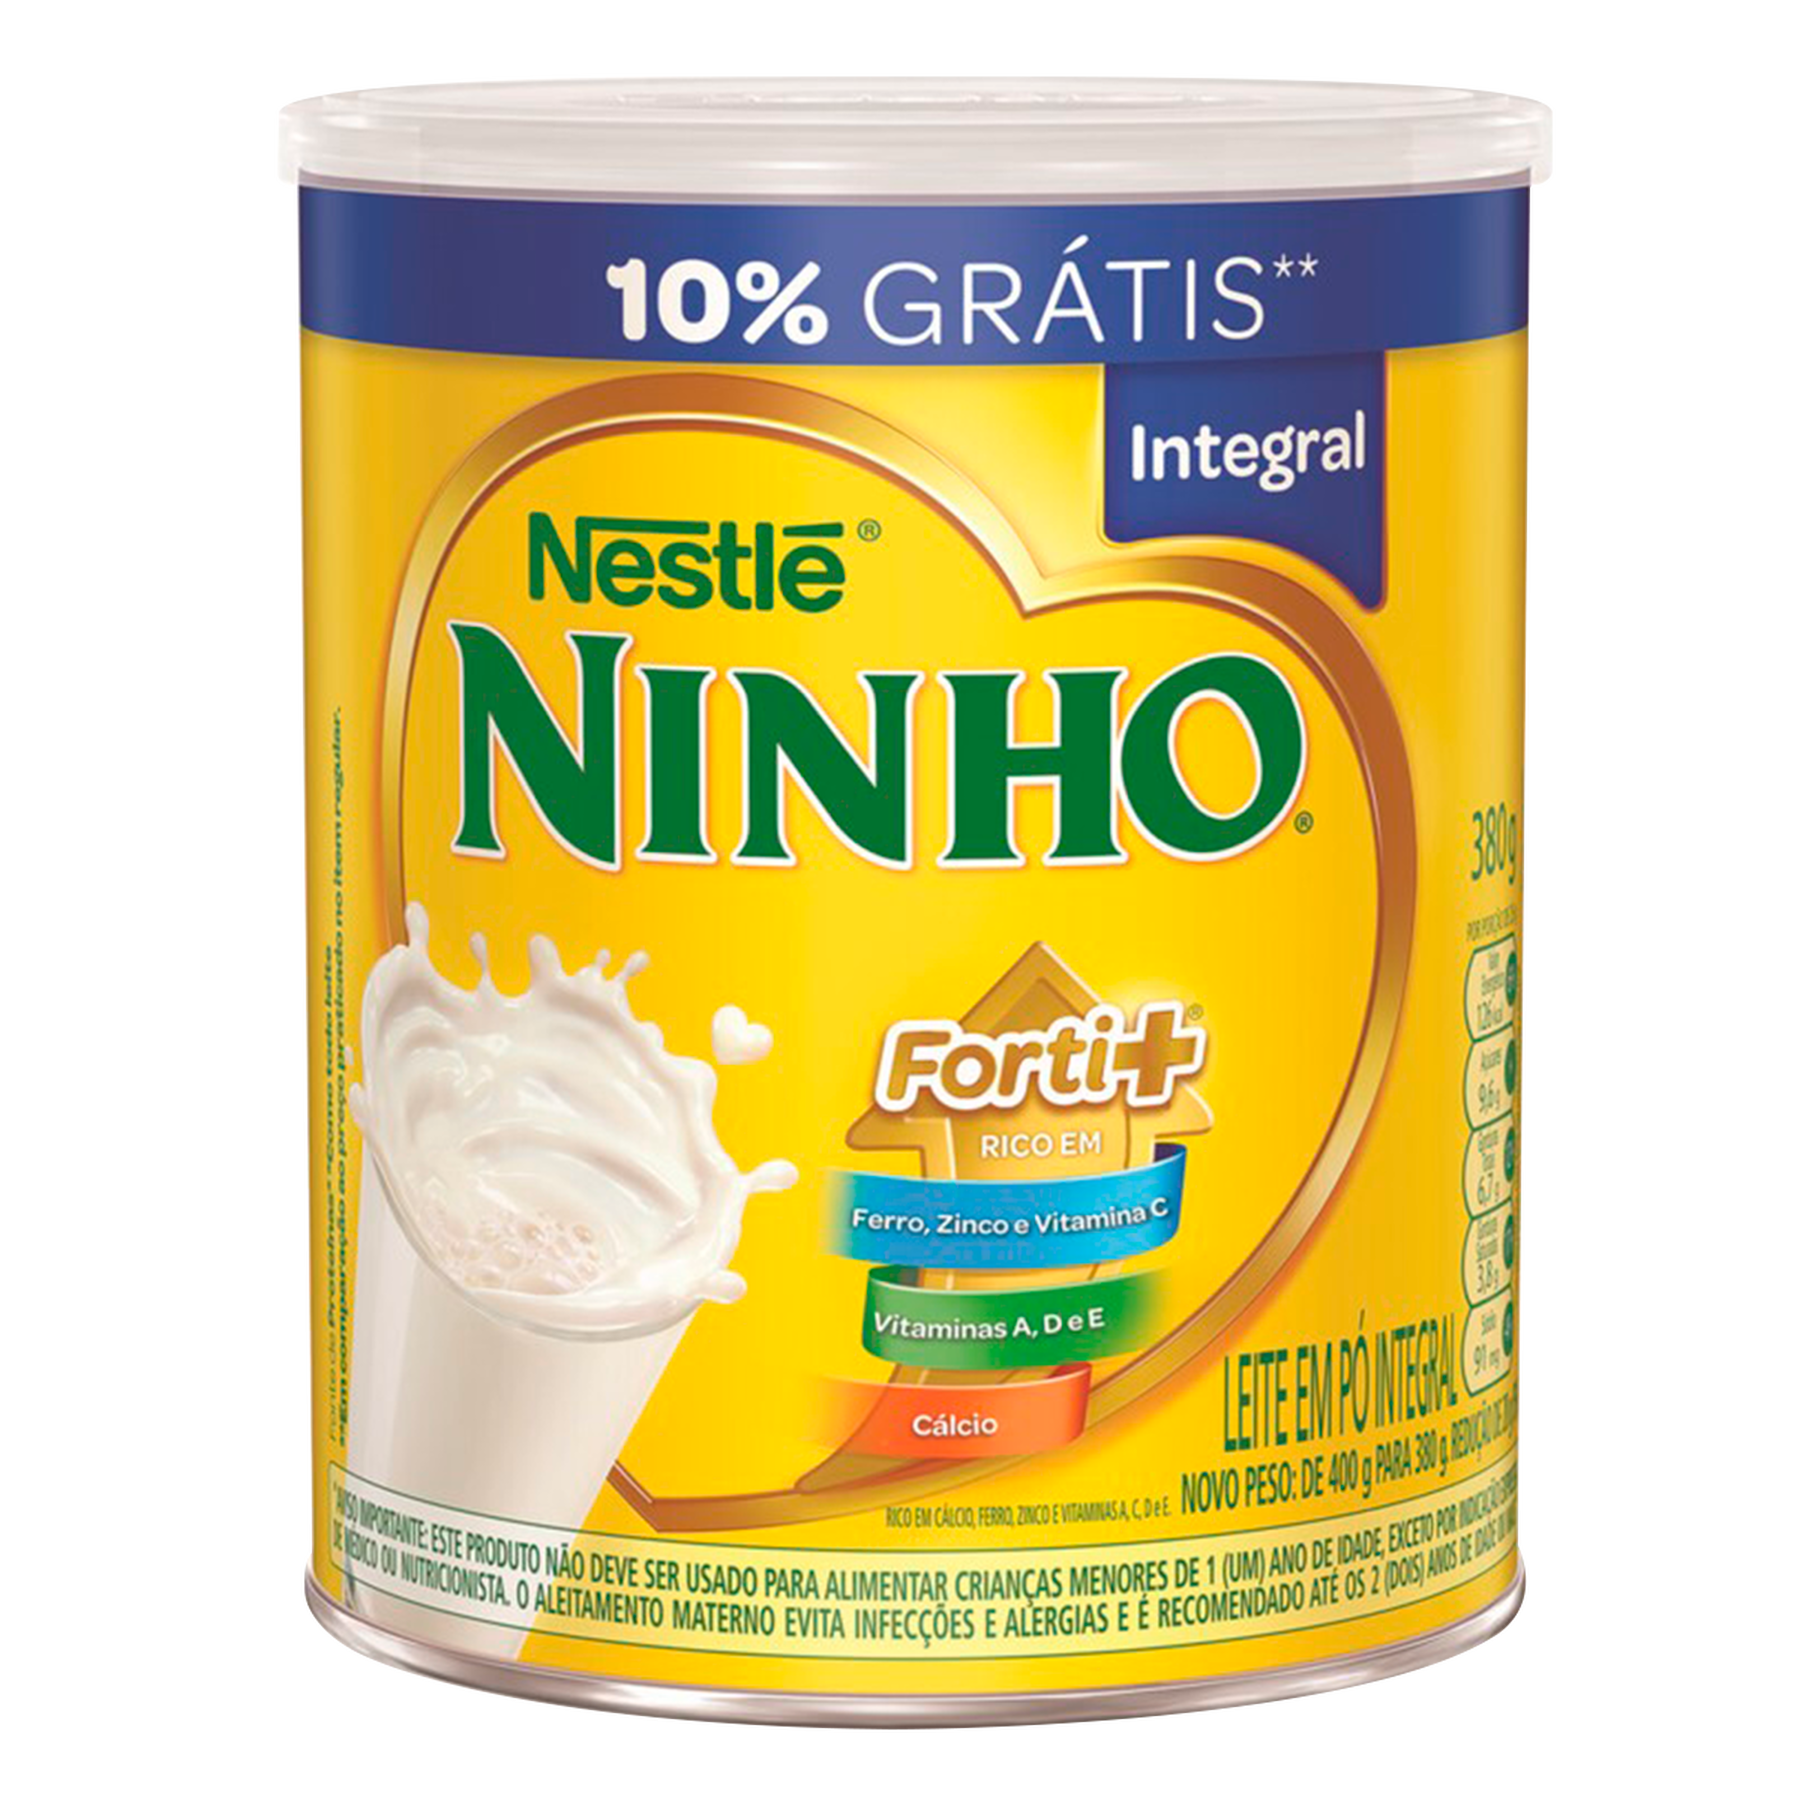 Leite em Pó Integral Ninho Forti+ Nestlé Lata 380g - Embalagem 10% Grátis